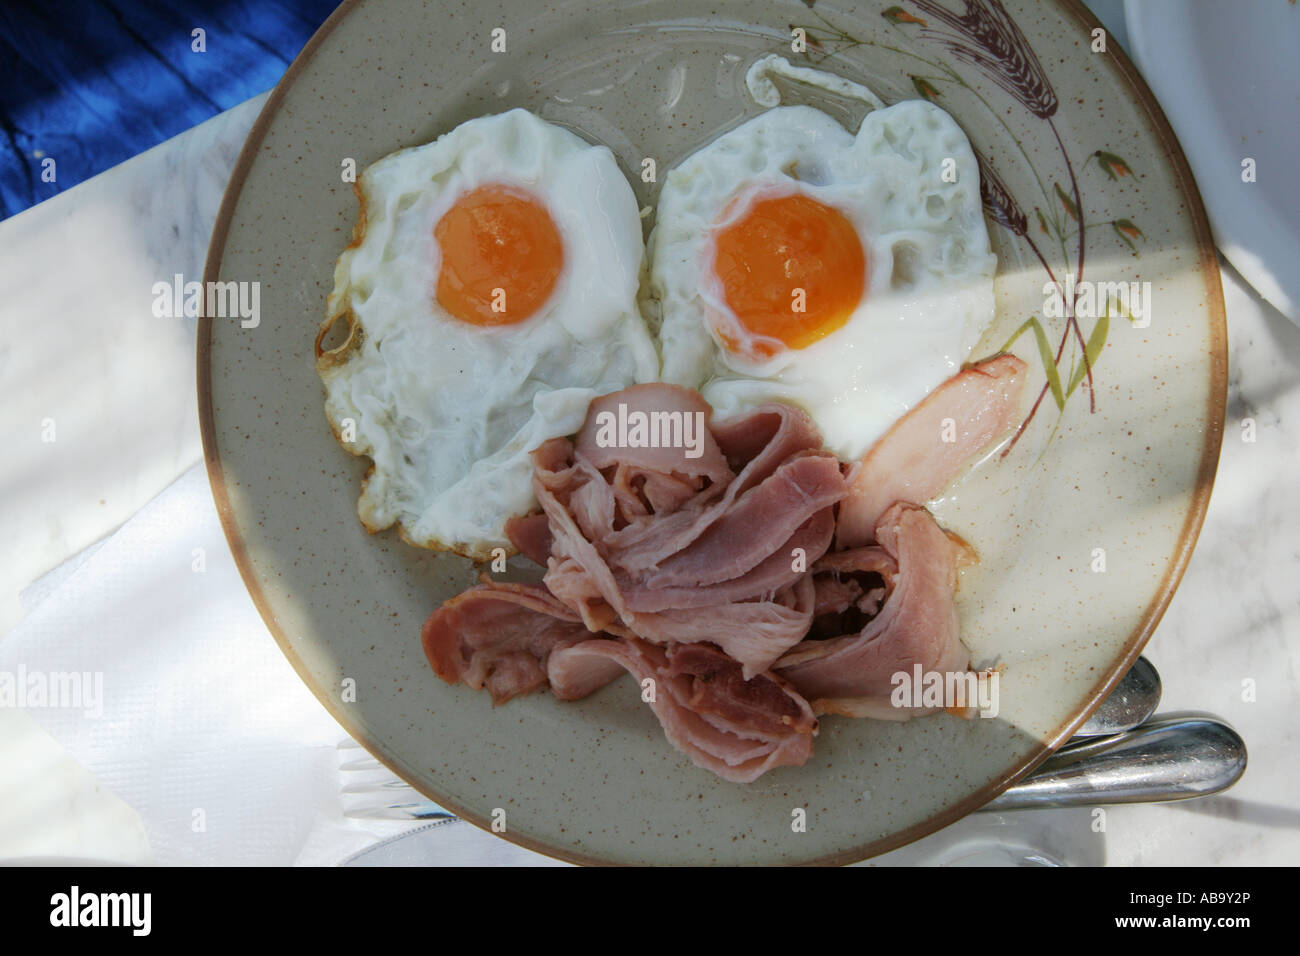 Une assiette avec des œufs et du bacon, à l'image d'un visage sur la plaque Banque D'Images